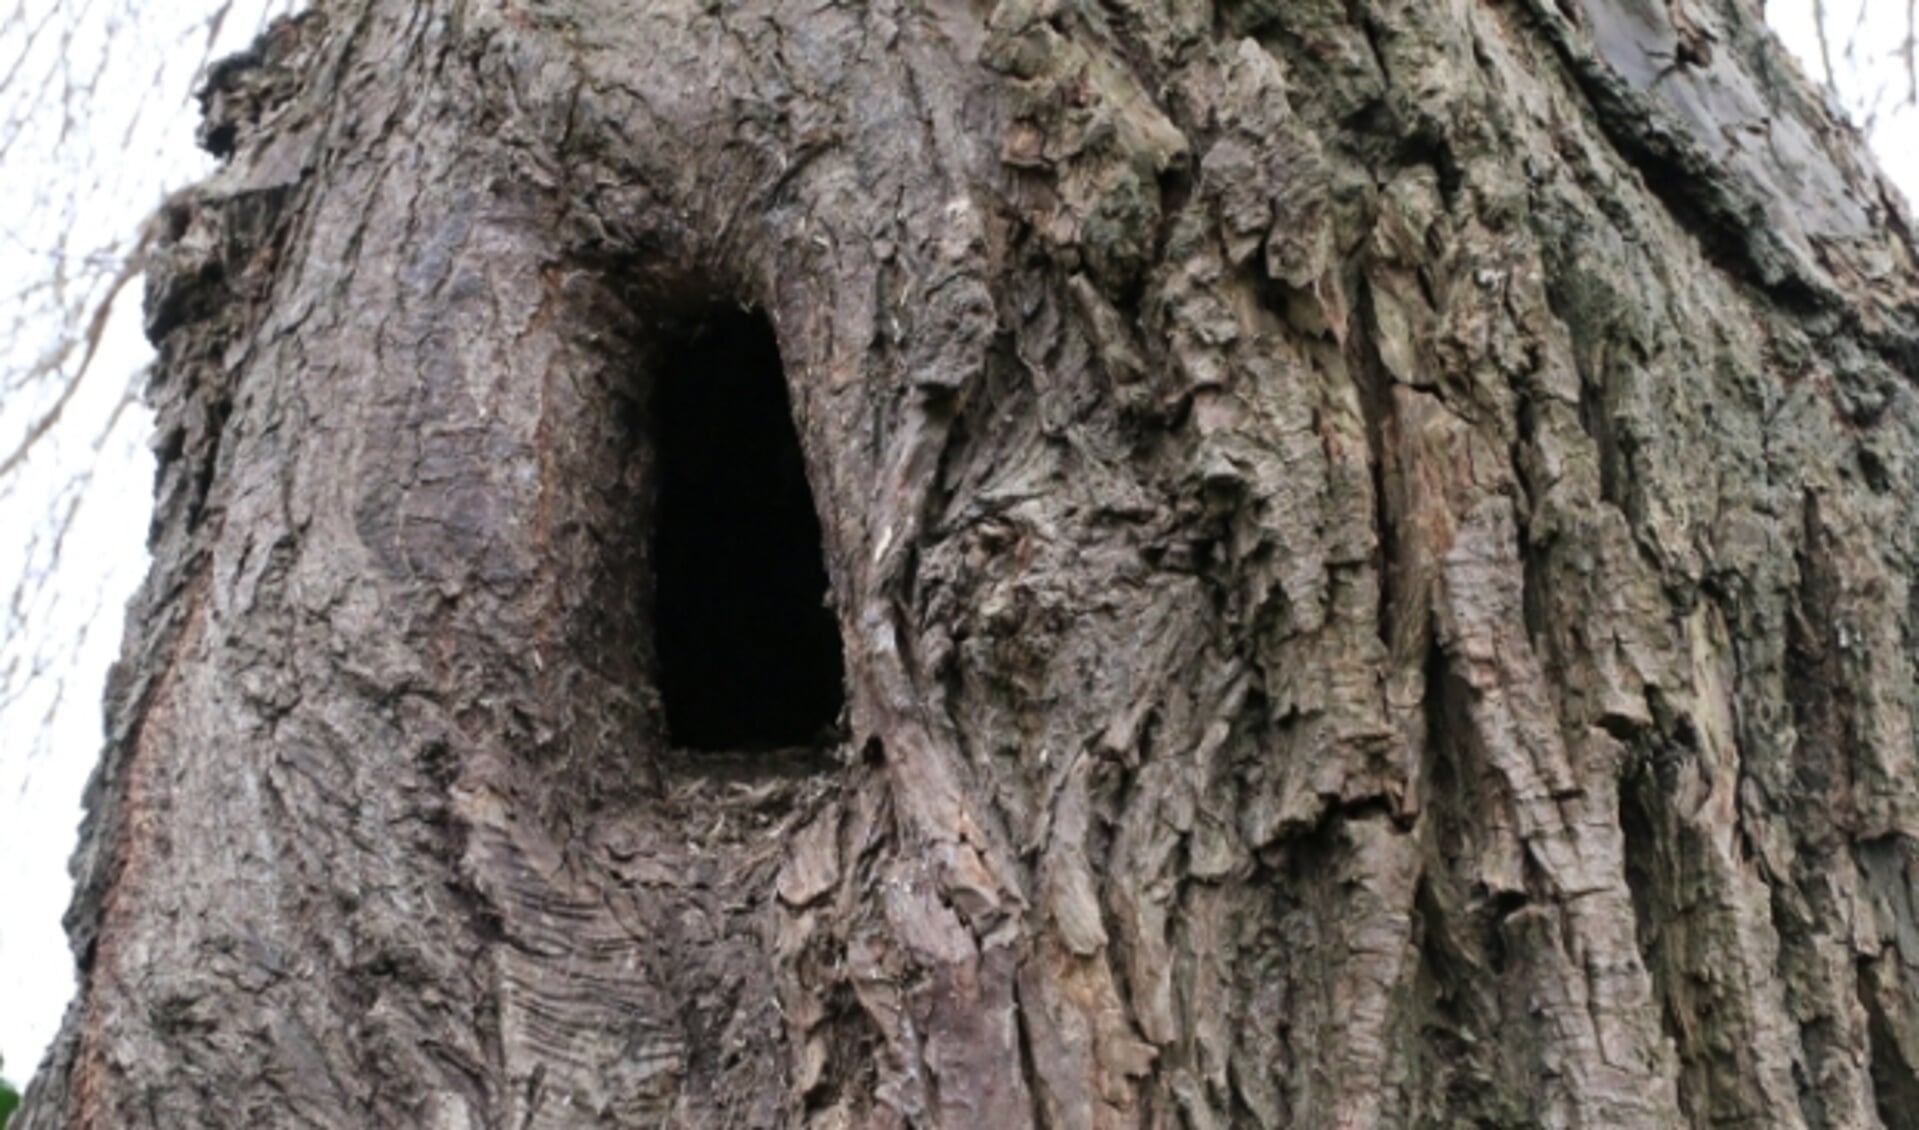 Hol van circa 20 centimeter hoog, slaapplaats van boommarter? (foto: Caroline Elfferich)